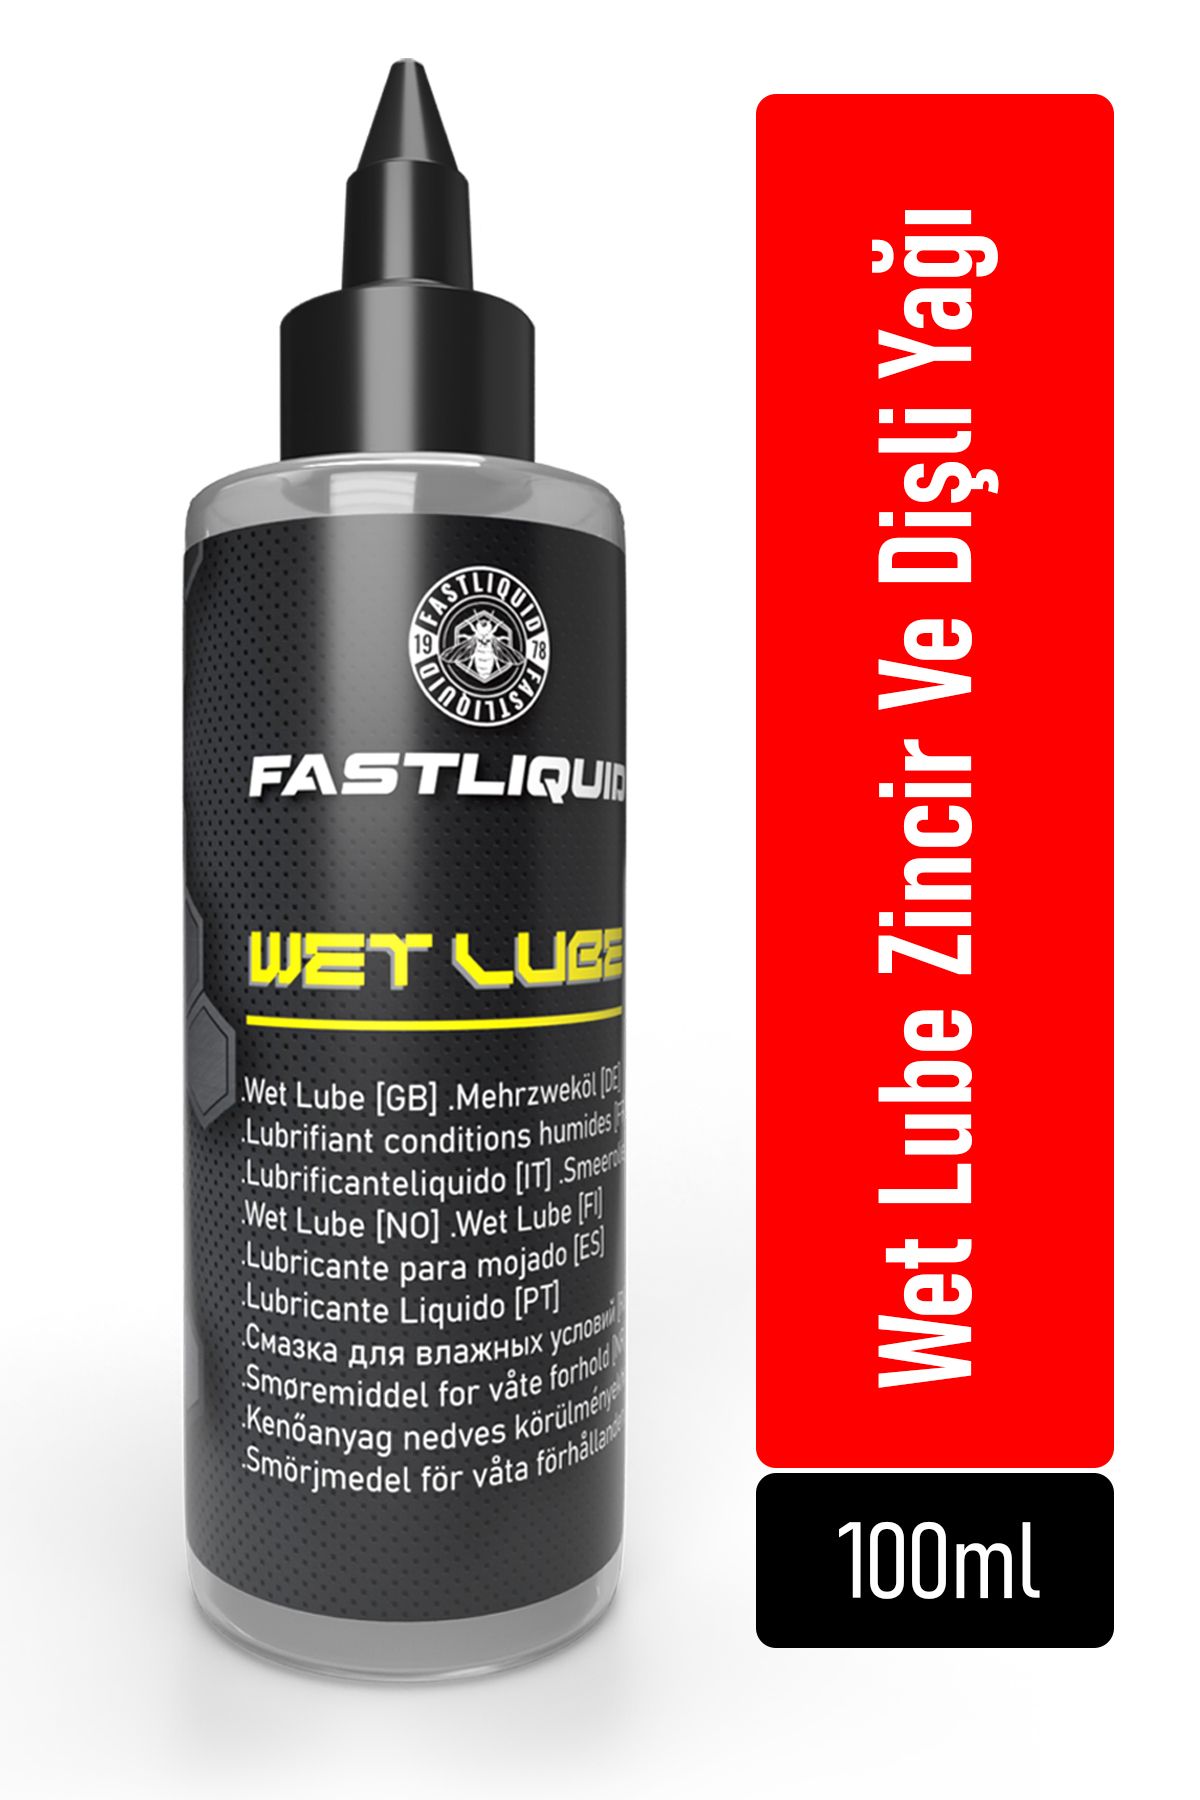 Fast Liquid Fastliquid Wet Lube Zincir Ve Dişli Yağı 100ml